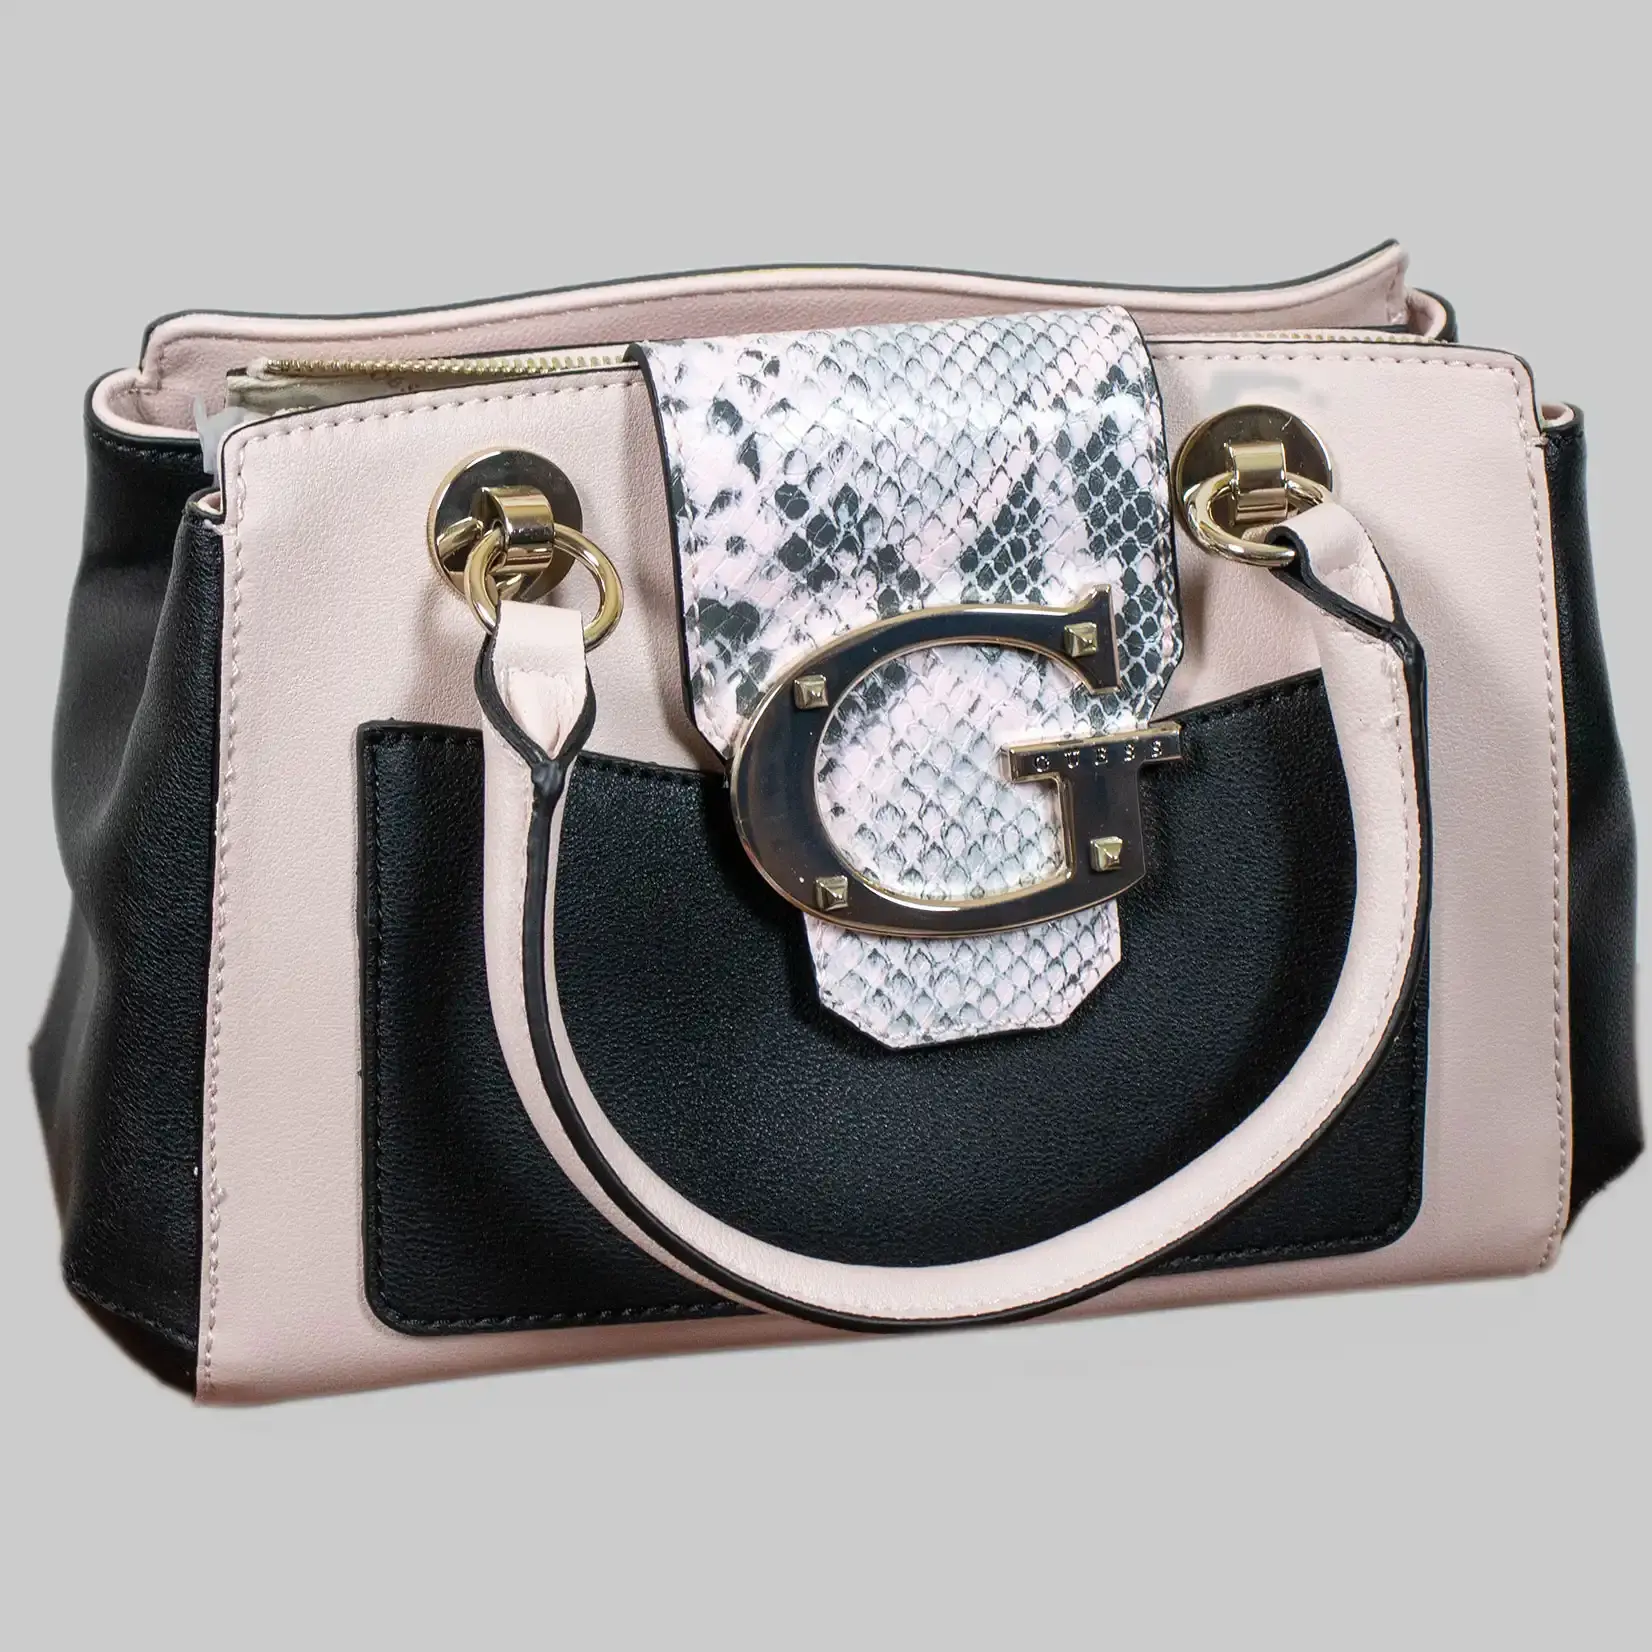 Guess Handtasche Damen Kunstleder -  Schwarz Python Rosa - Großes G als Logo - Reißverschluss, Magnetverschluss